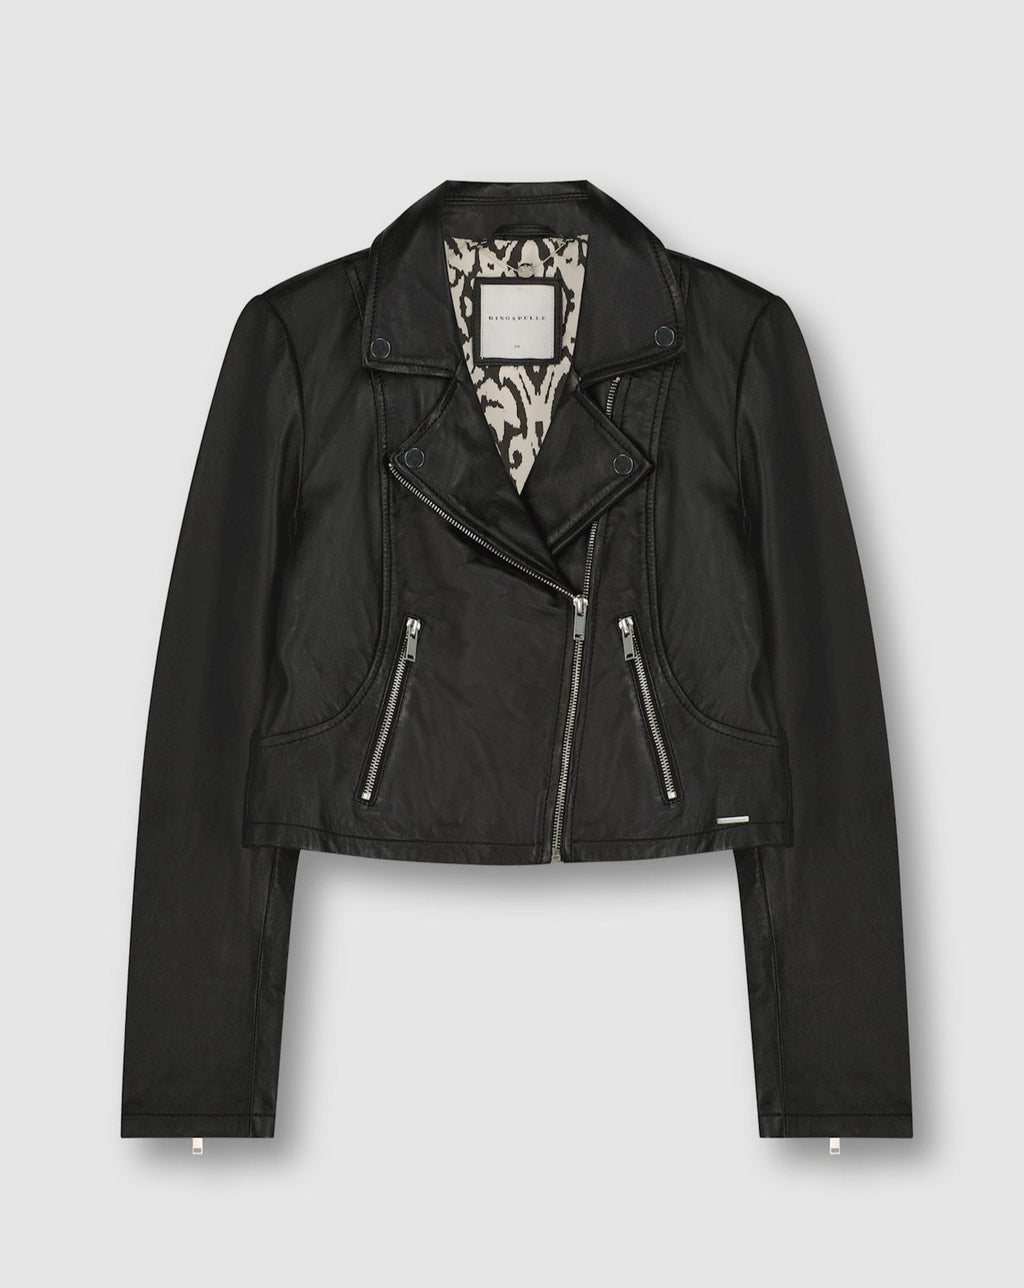 Rino - Rilly Black Leather Jacket